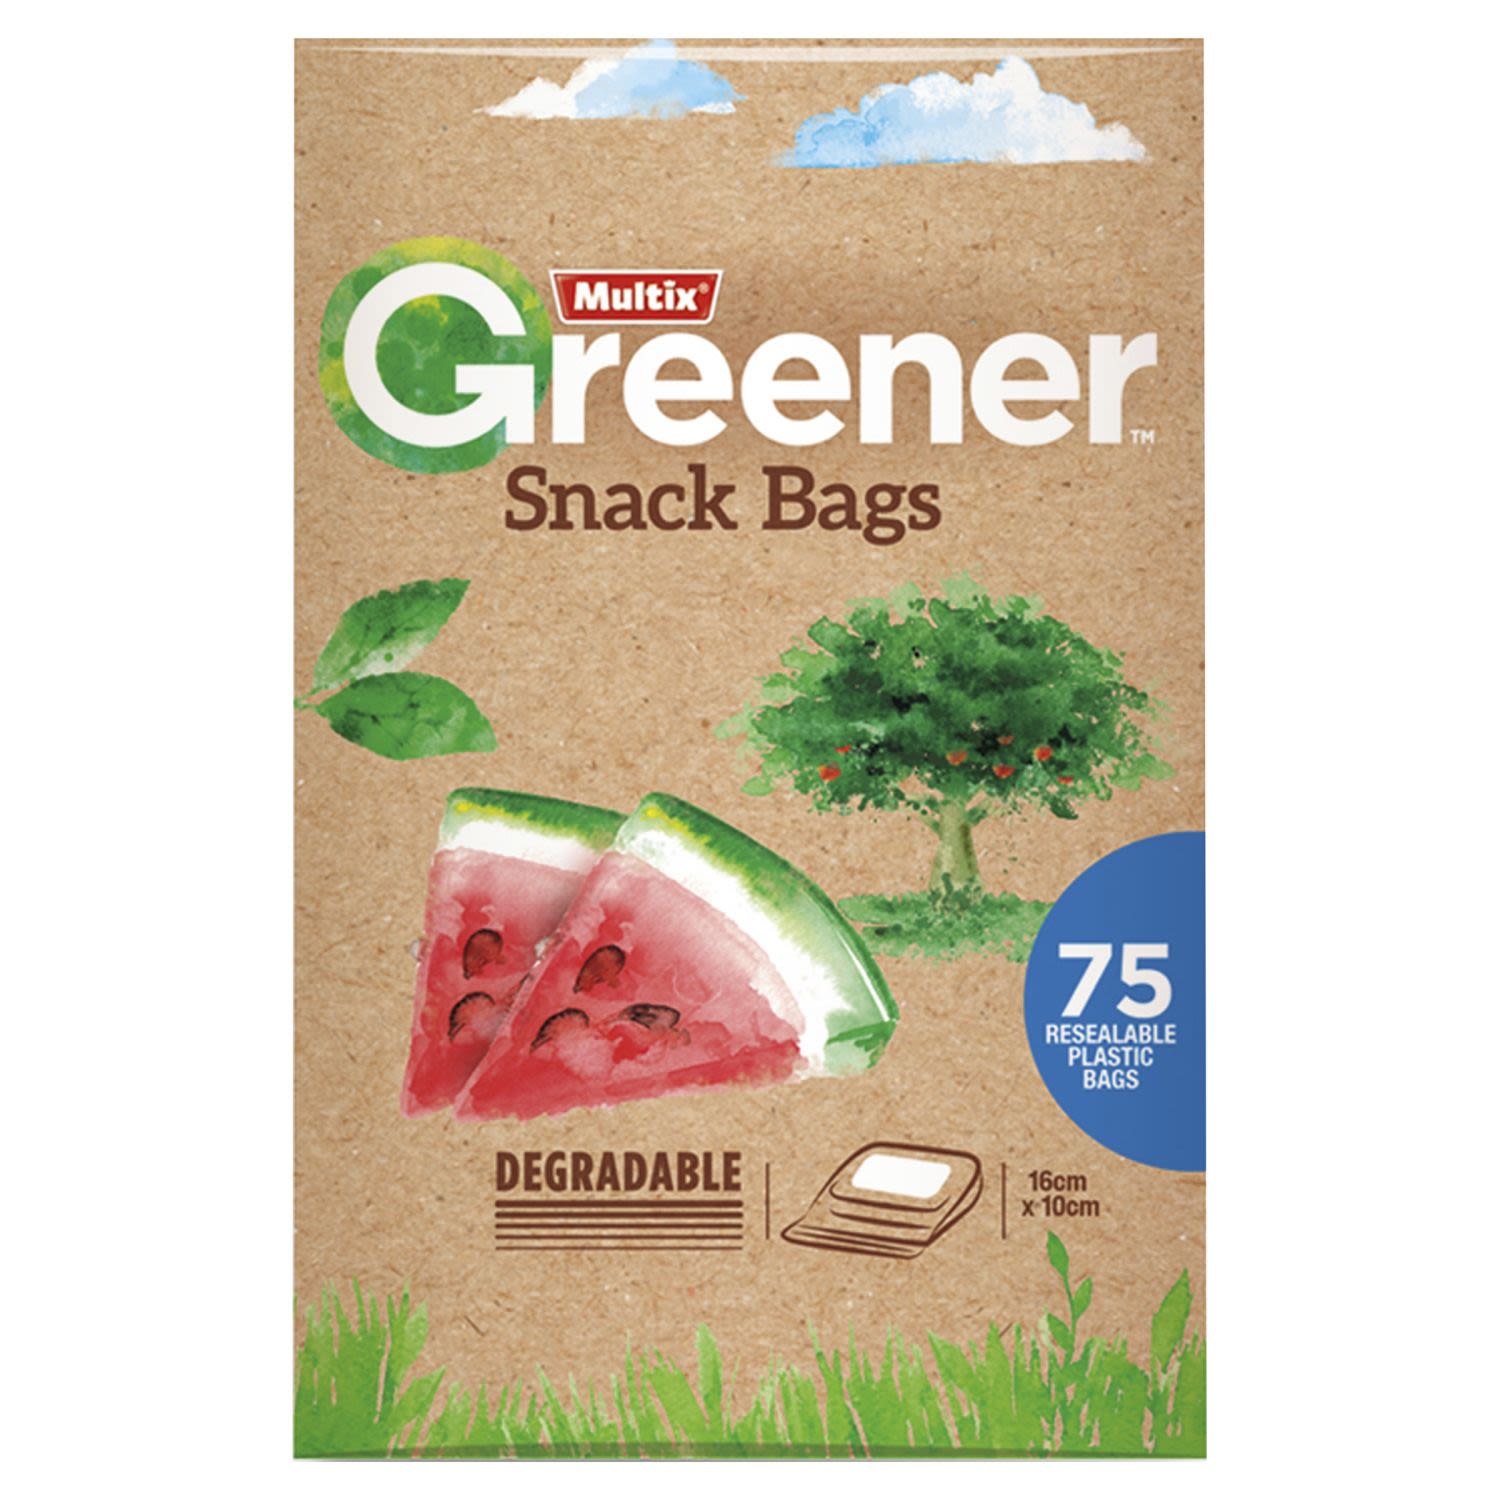 Multix Greener Snack Bags, 75 Each